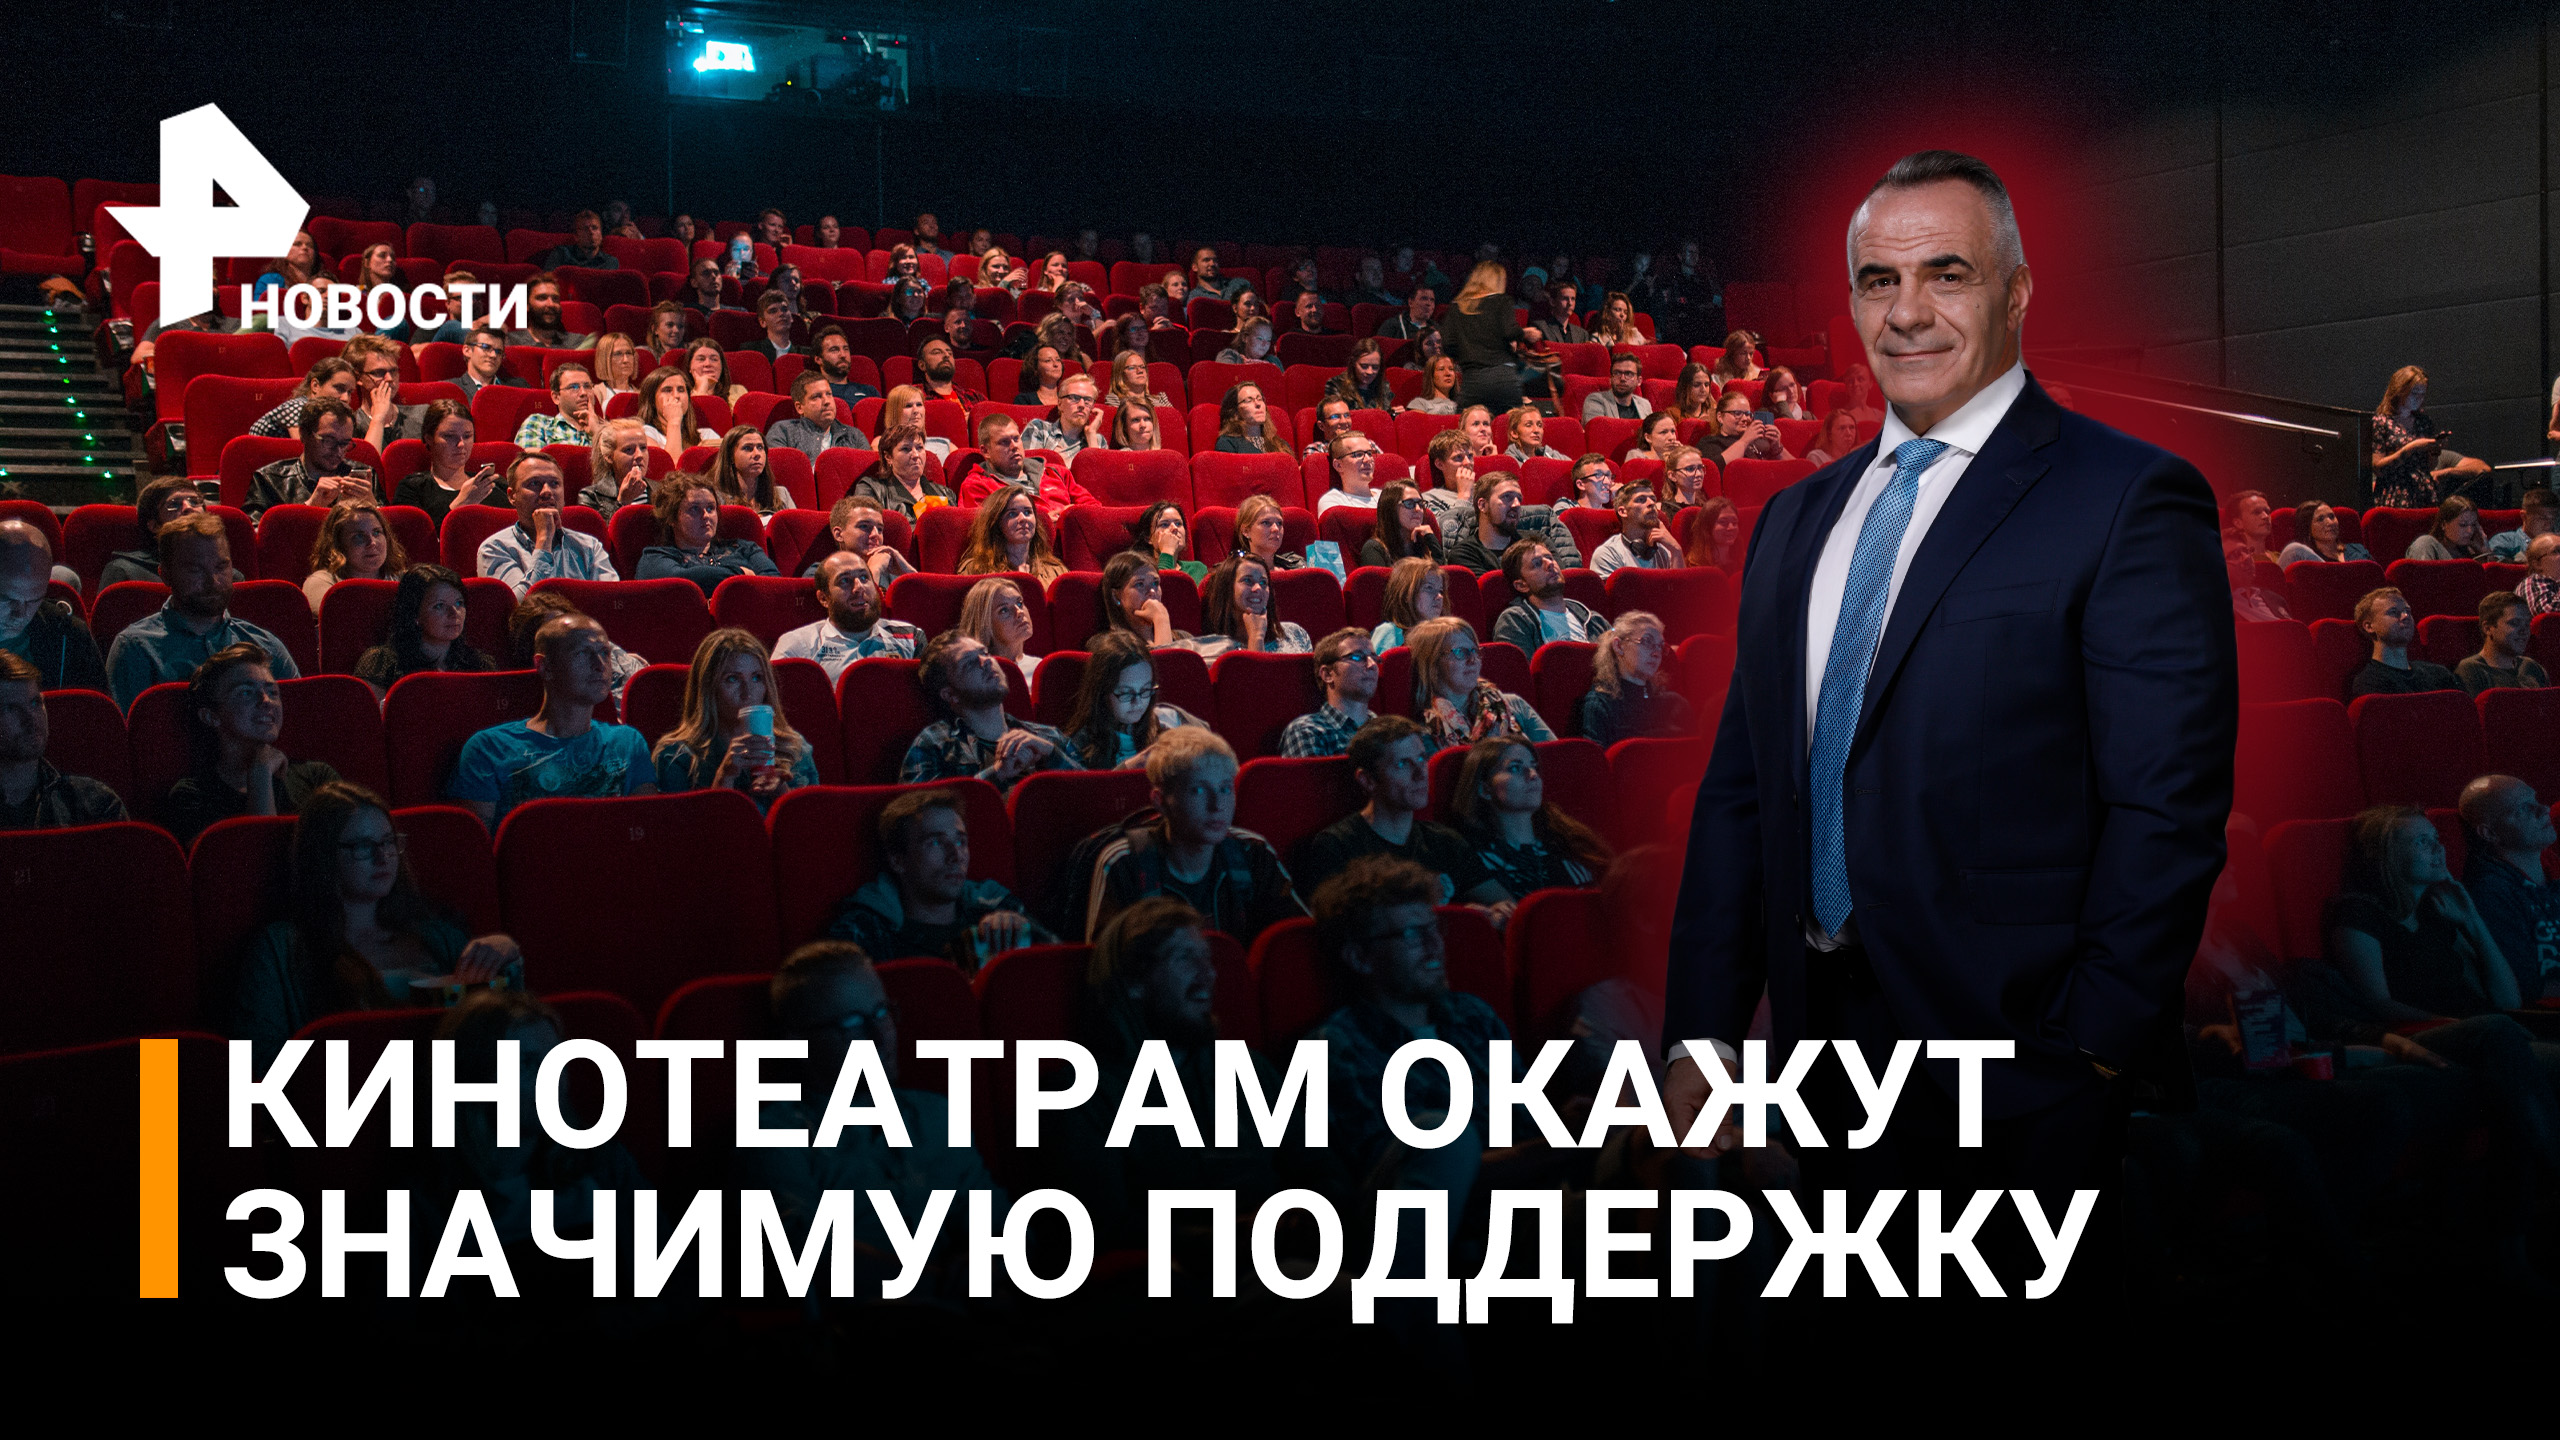 Попкорно благодарны: кинотеатры в России все-таки поддержат. Новинки 2022 / Итоги с Петром Марченко